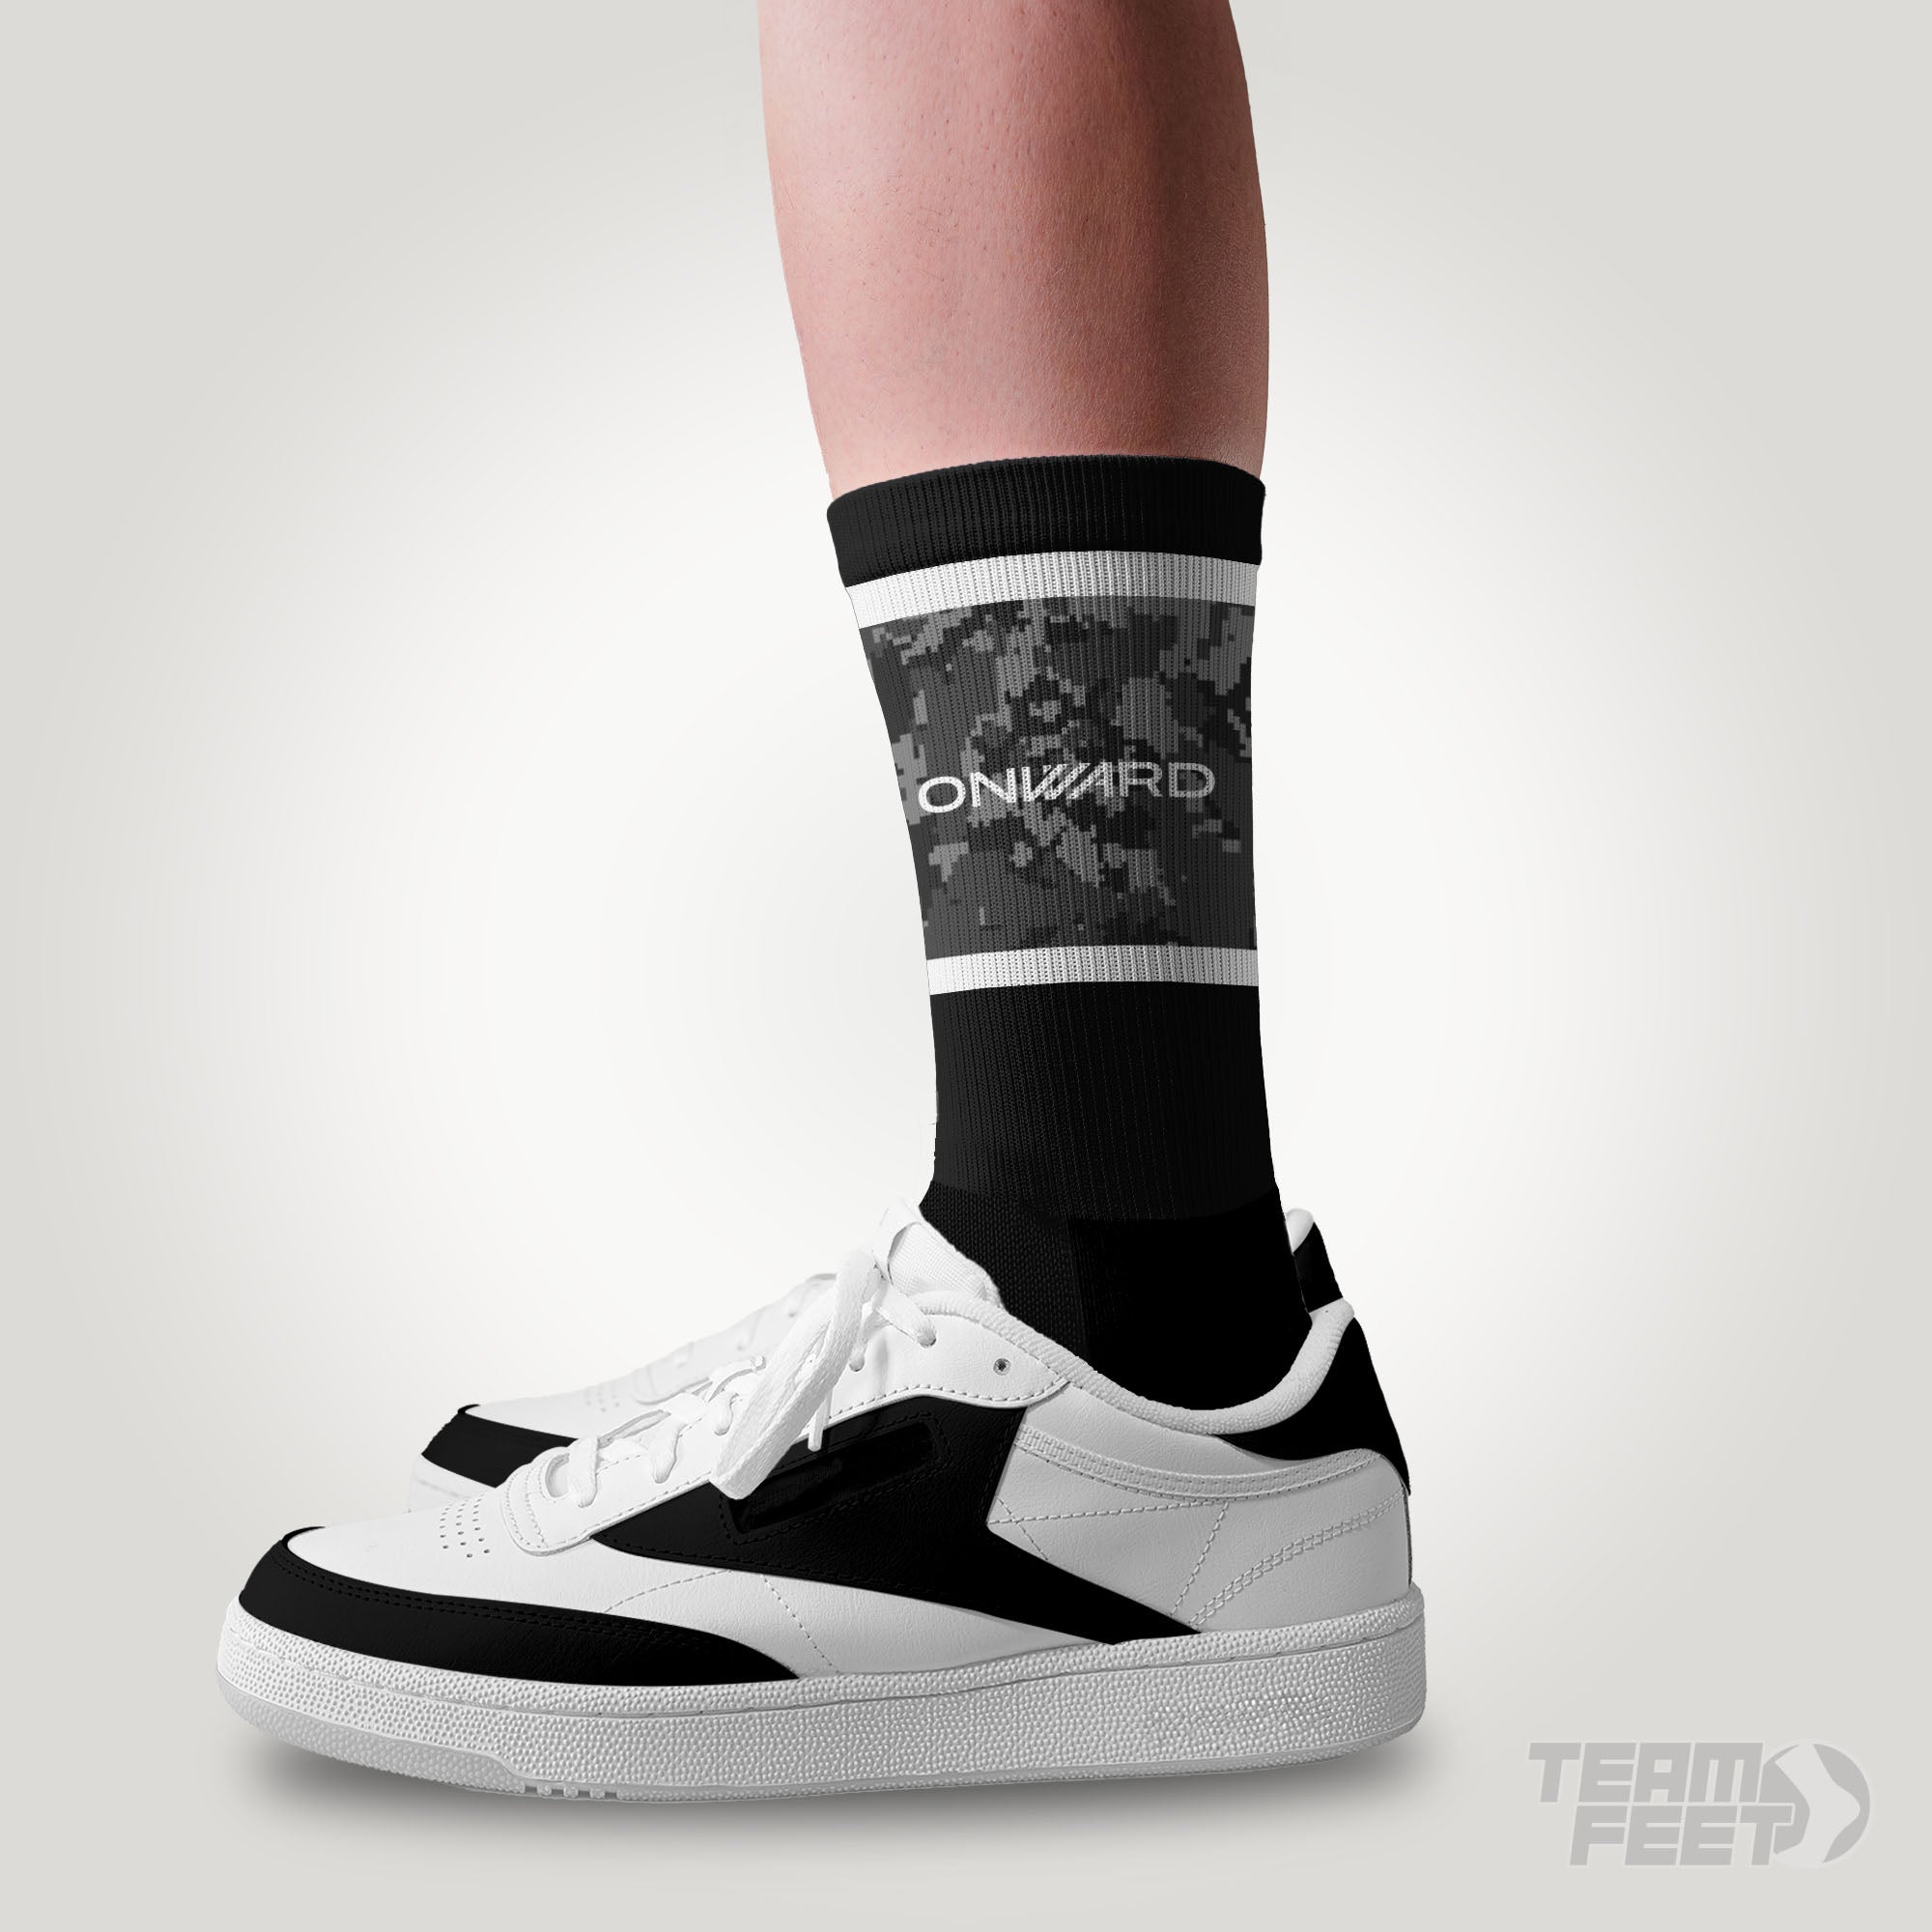 MTb socks - CREW